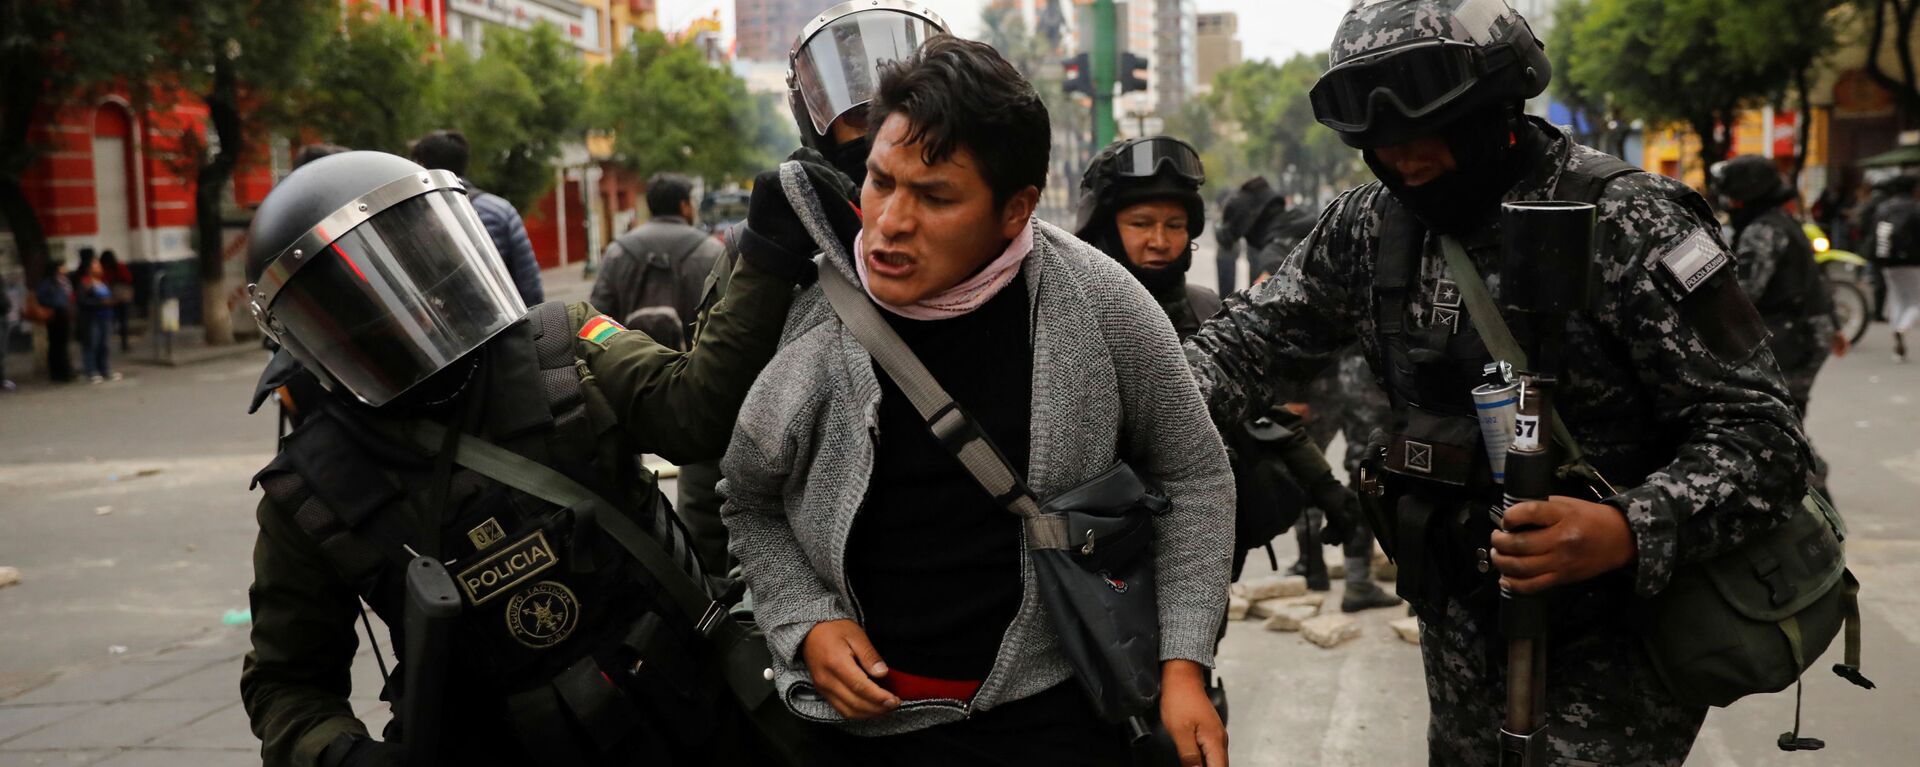 Người ủng hộ Evo Morales bị cảnh sát Bolivian bắt giữ trong các cuộc biểu tình - Sputnik Việt Nam, 1920, 17.11.2019